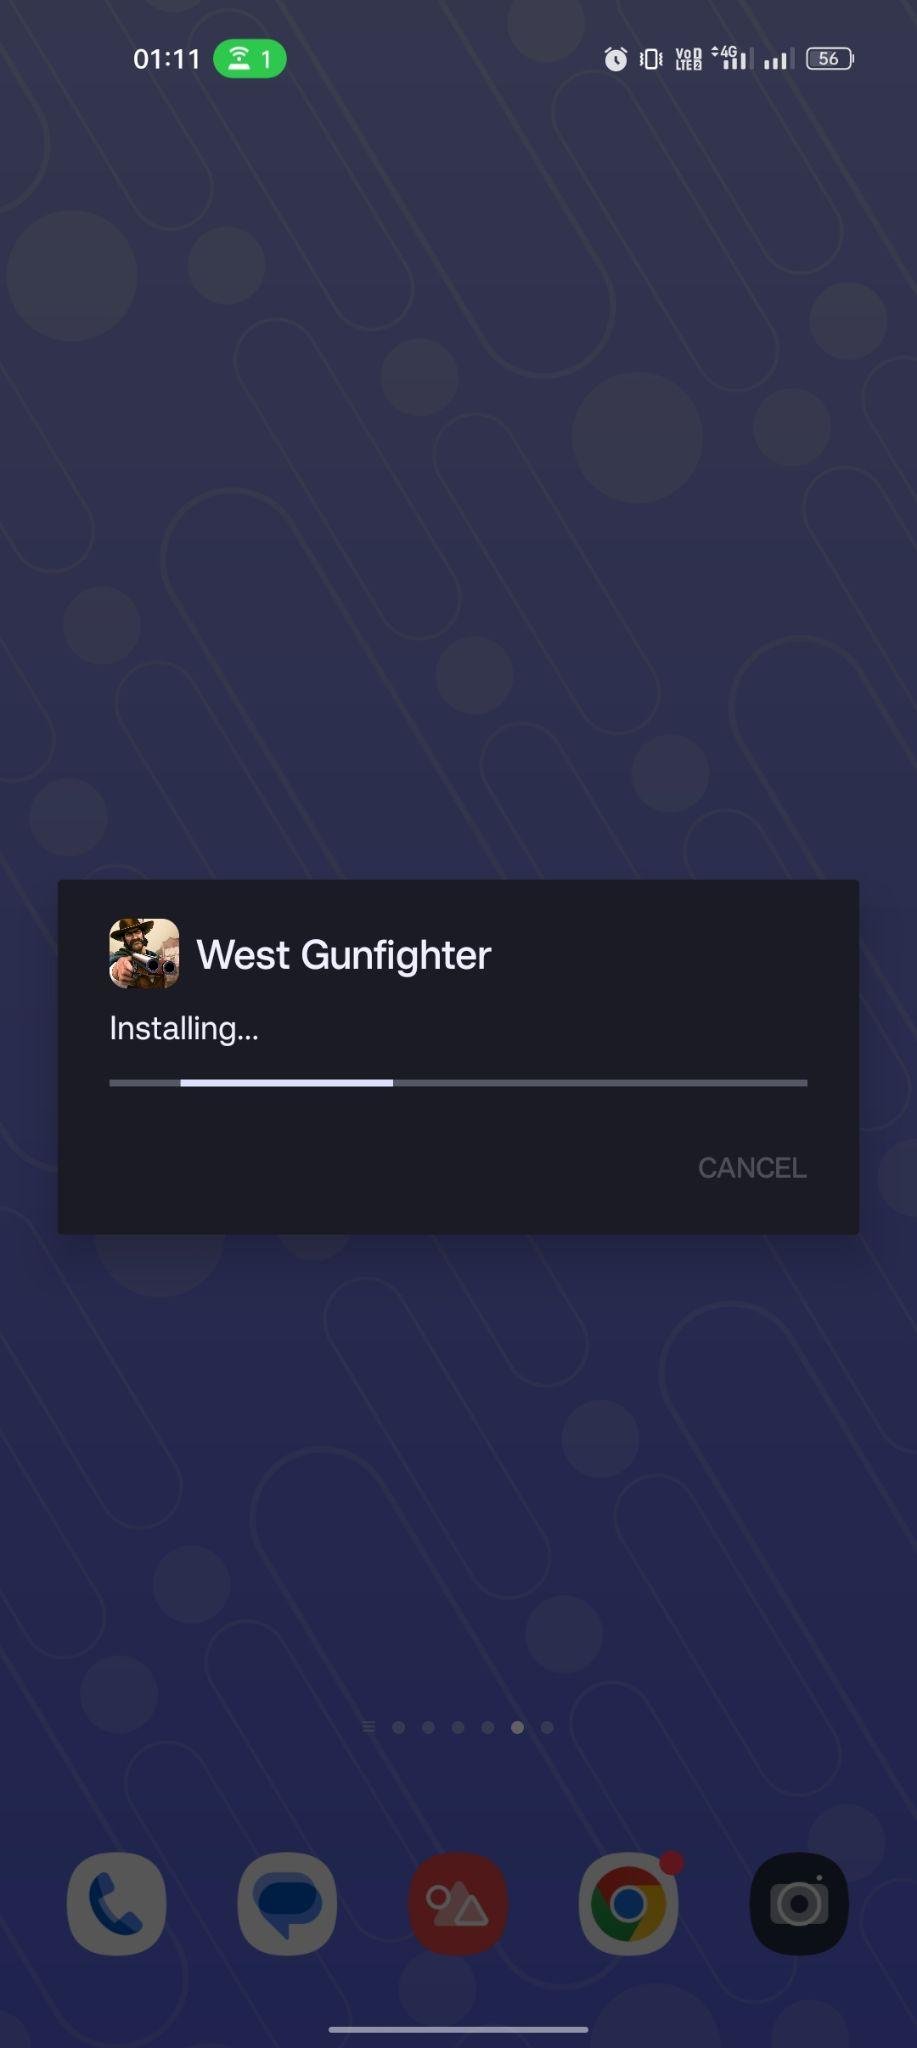 West Gunfighter apk installing